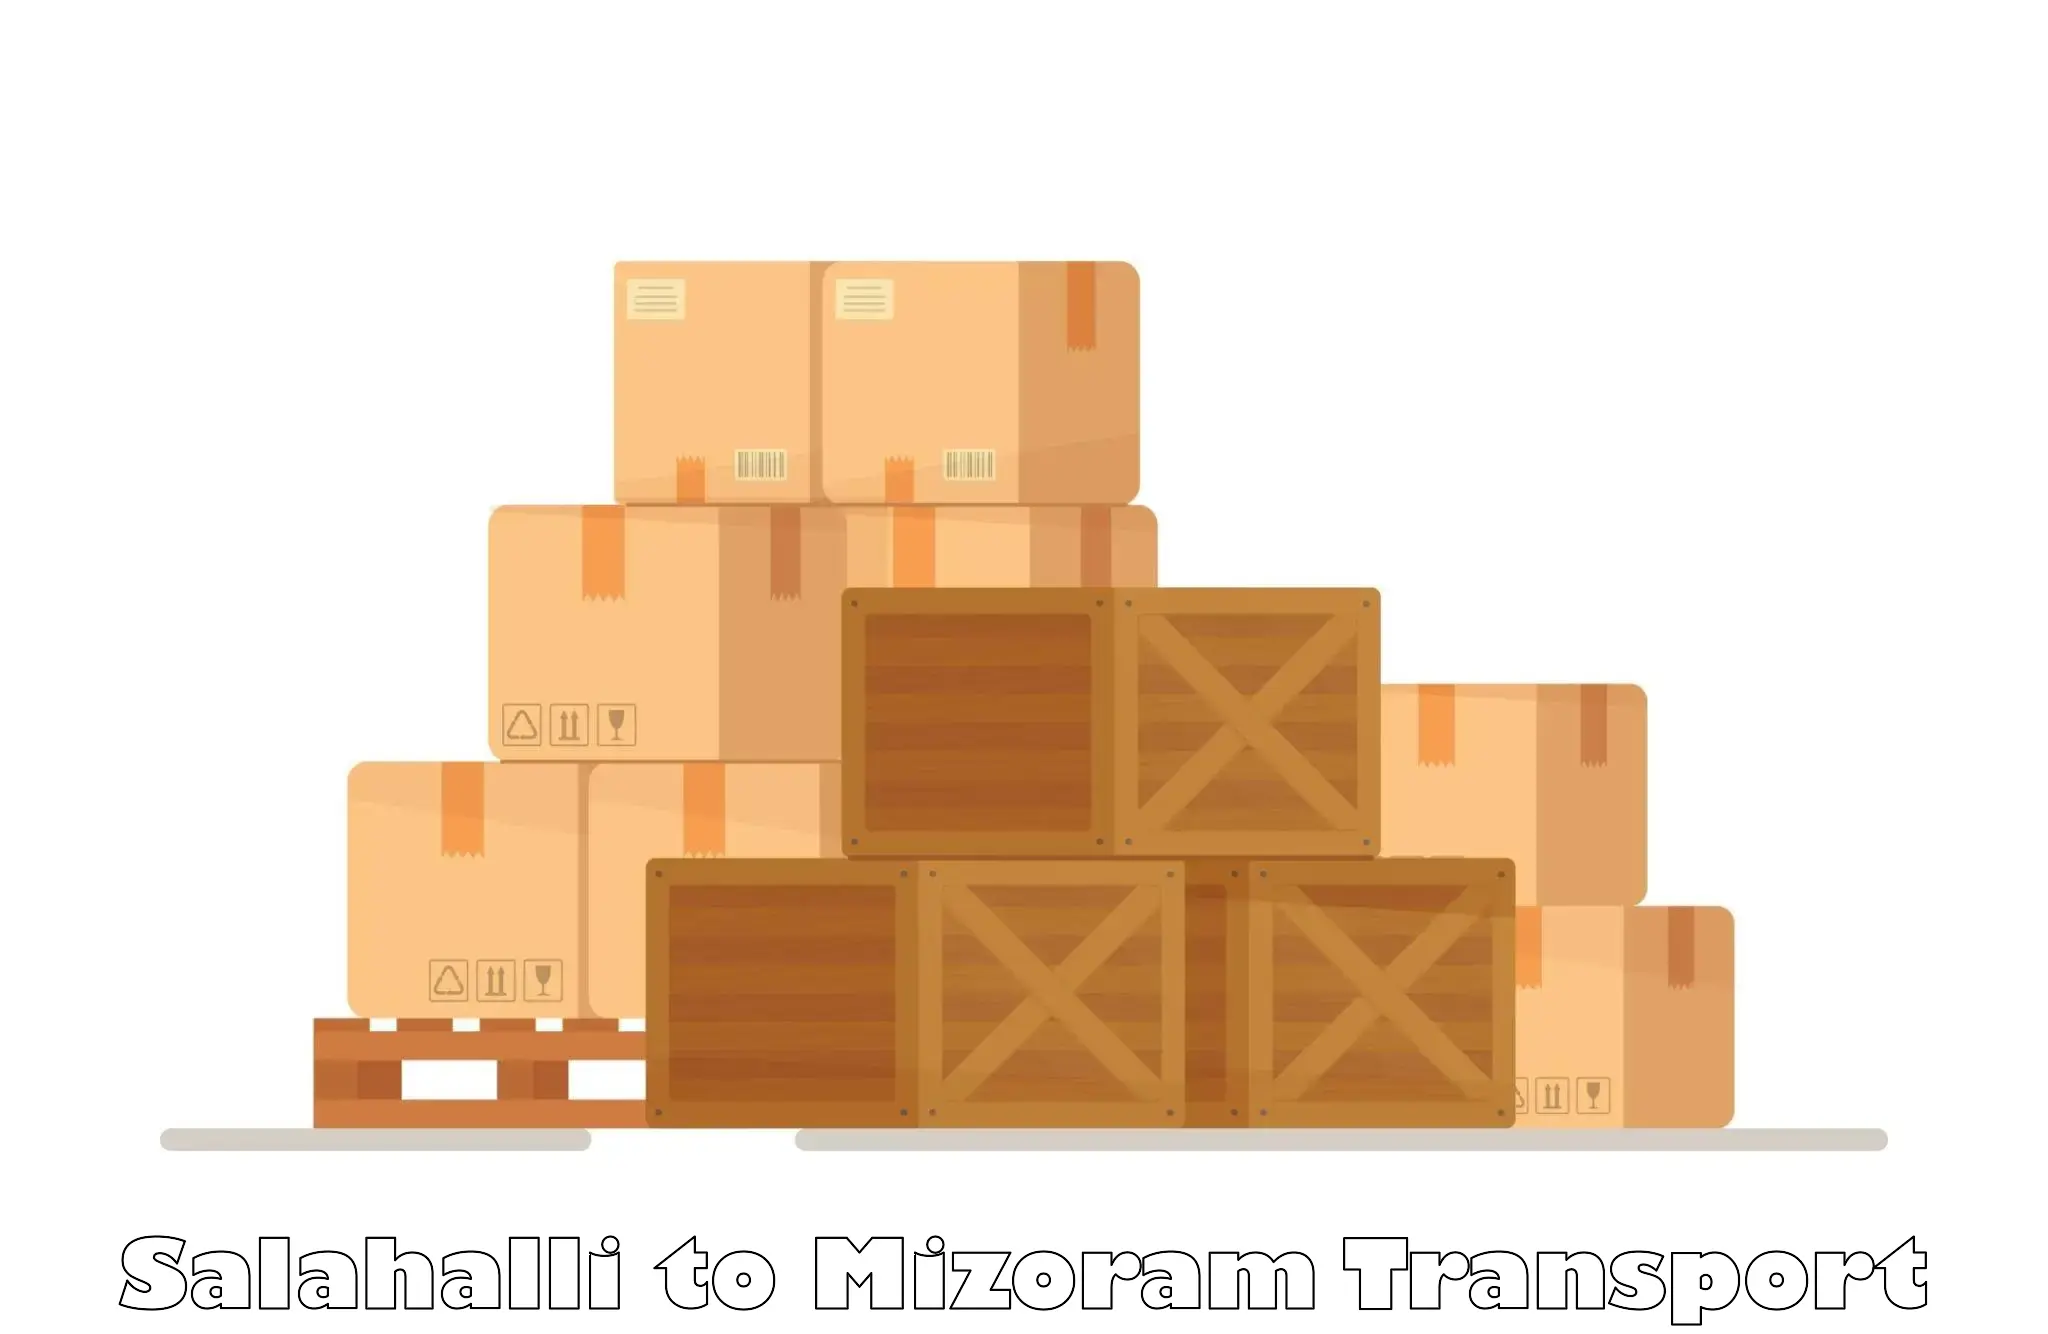 India truck logistics services Salahalli to Mizoram